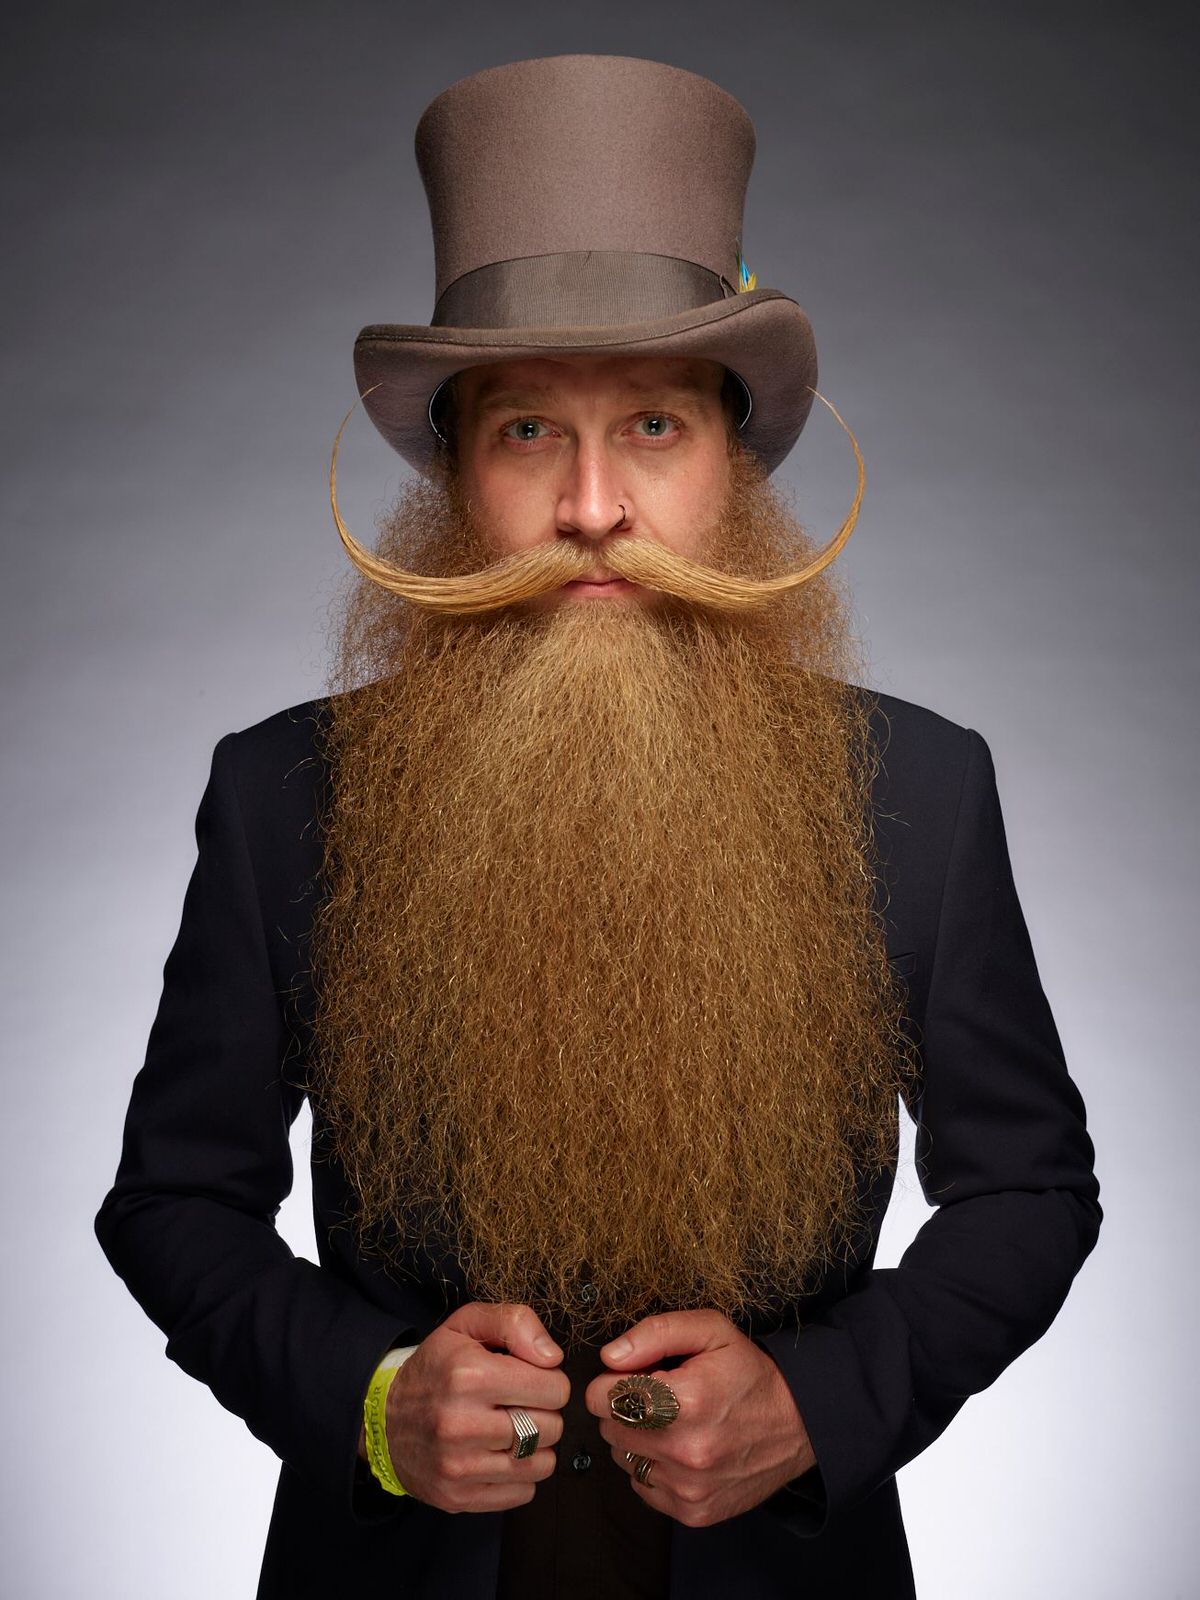 Самый необычный народ. Необычная борода. Мужчина с большой бородой. Смешная борода. Необычные бороды и усы.